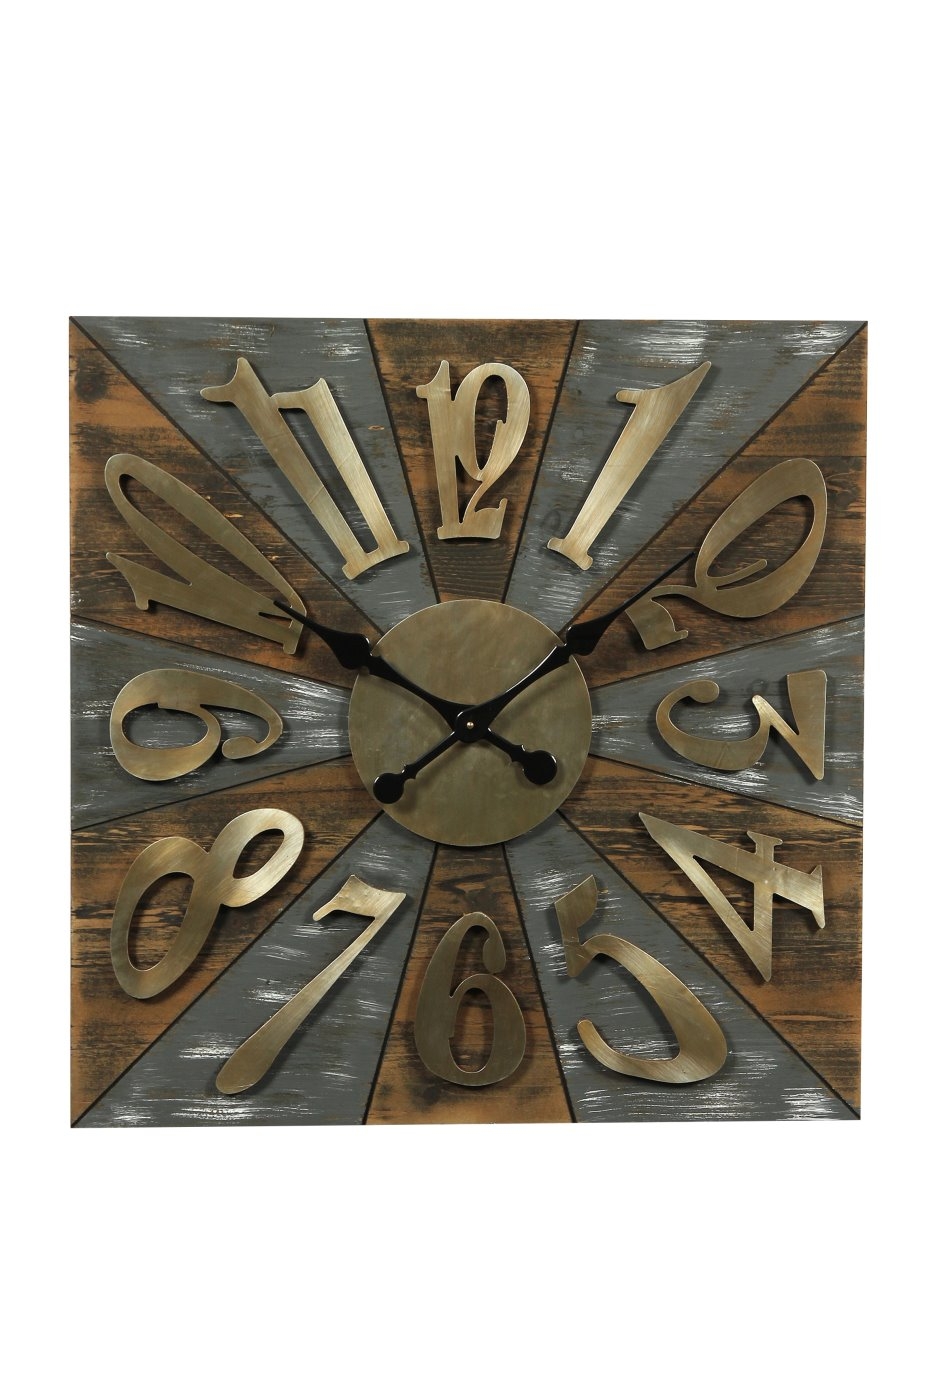 bhp Holz Wanduhr Eckig anthrazit mit goldenen arabischen Ziffernblatt 70 x 70 cm unter Uhren > Living - Haus & Garten